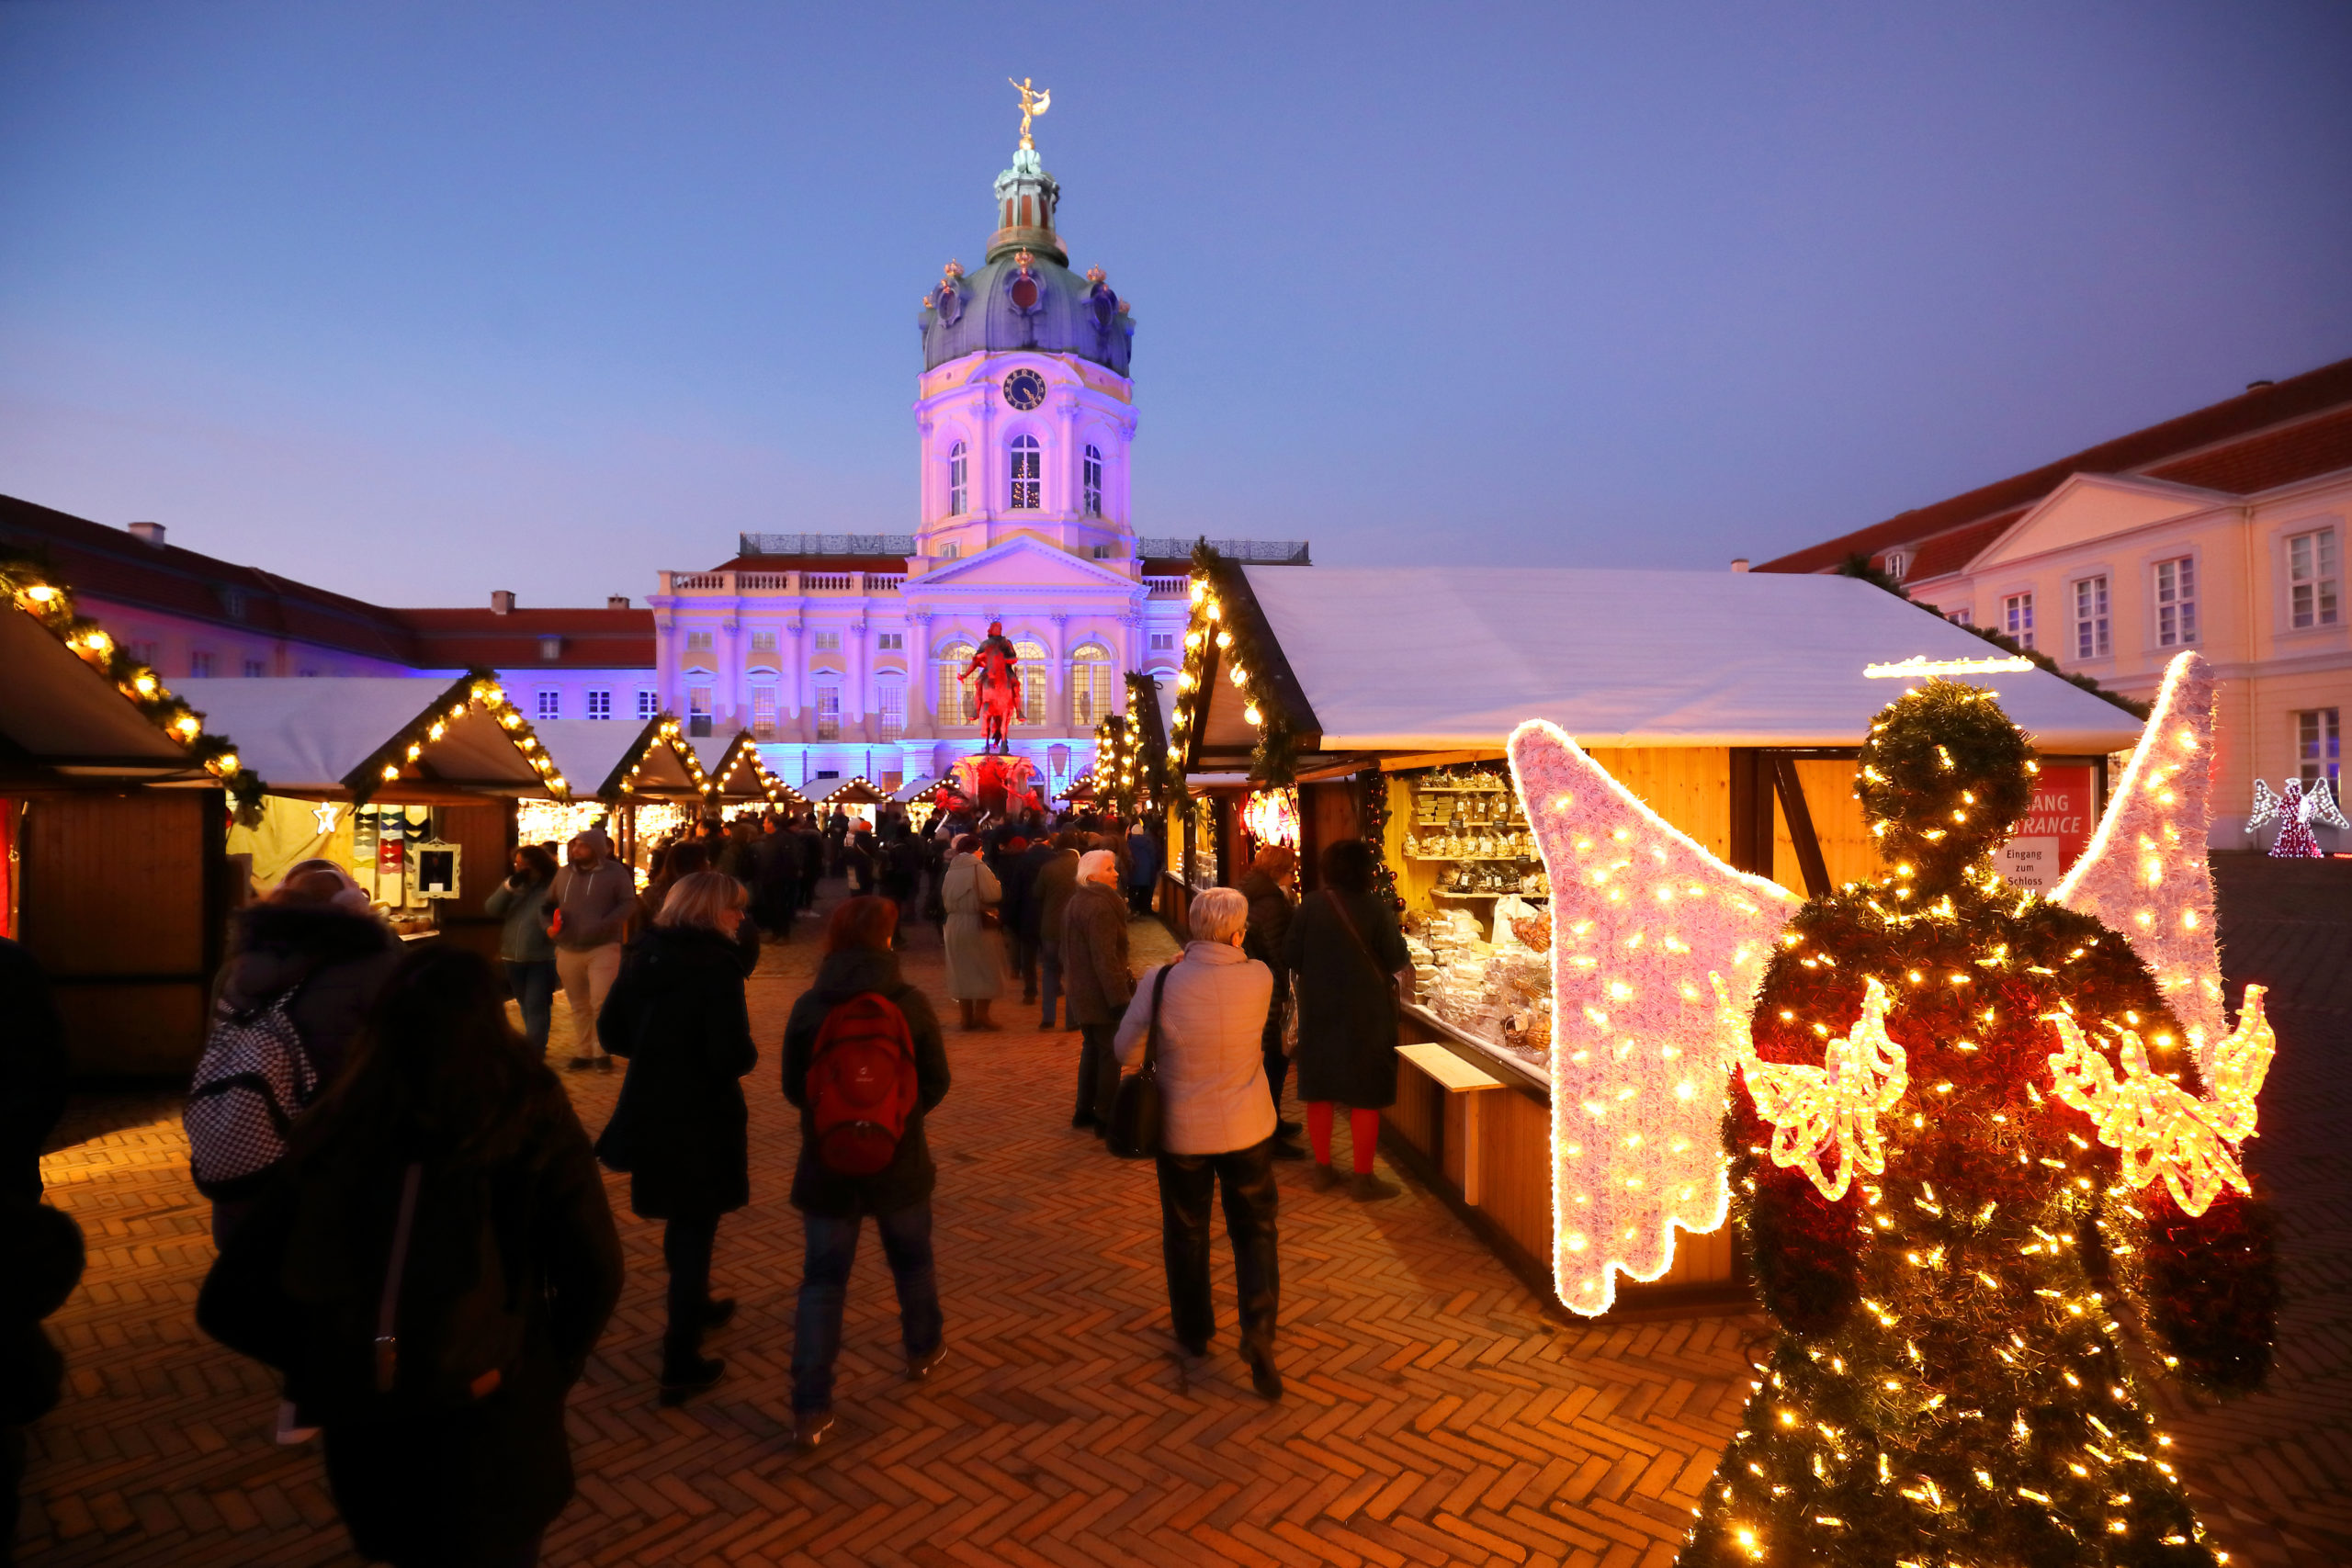 Der Weihnachtsmarkt vor dem Schloss Charlottenburg findet vor einer magischen Kulisse statt.